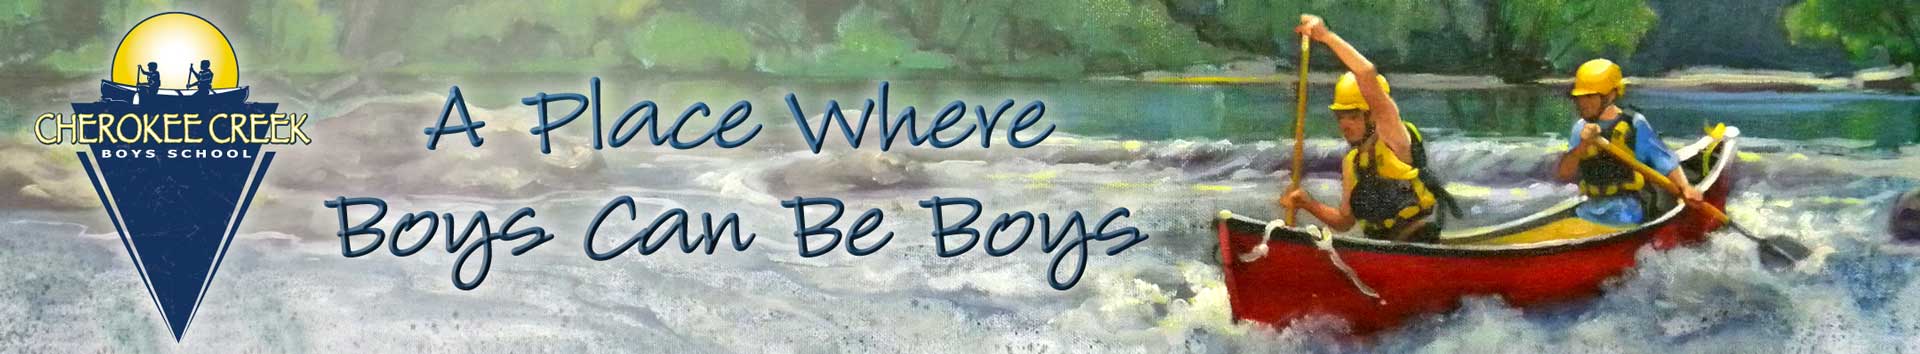 CCBS Boys Canoeing | A Place Where Boys Can Be Boys